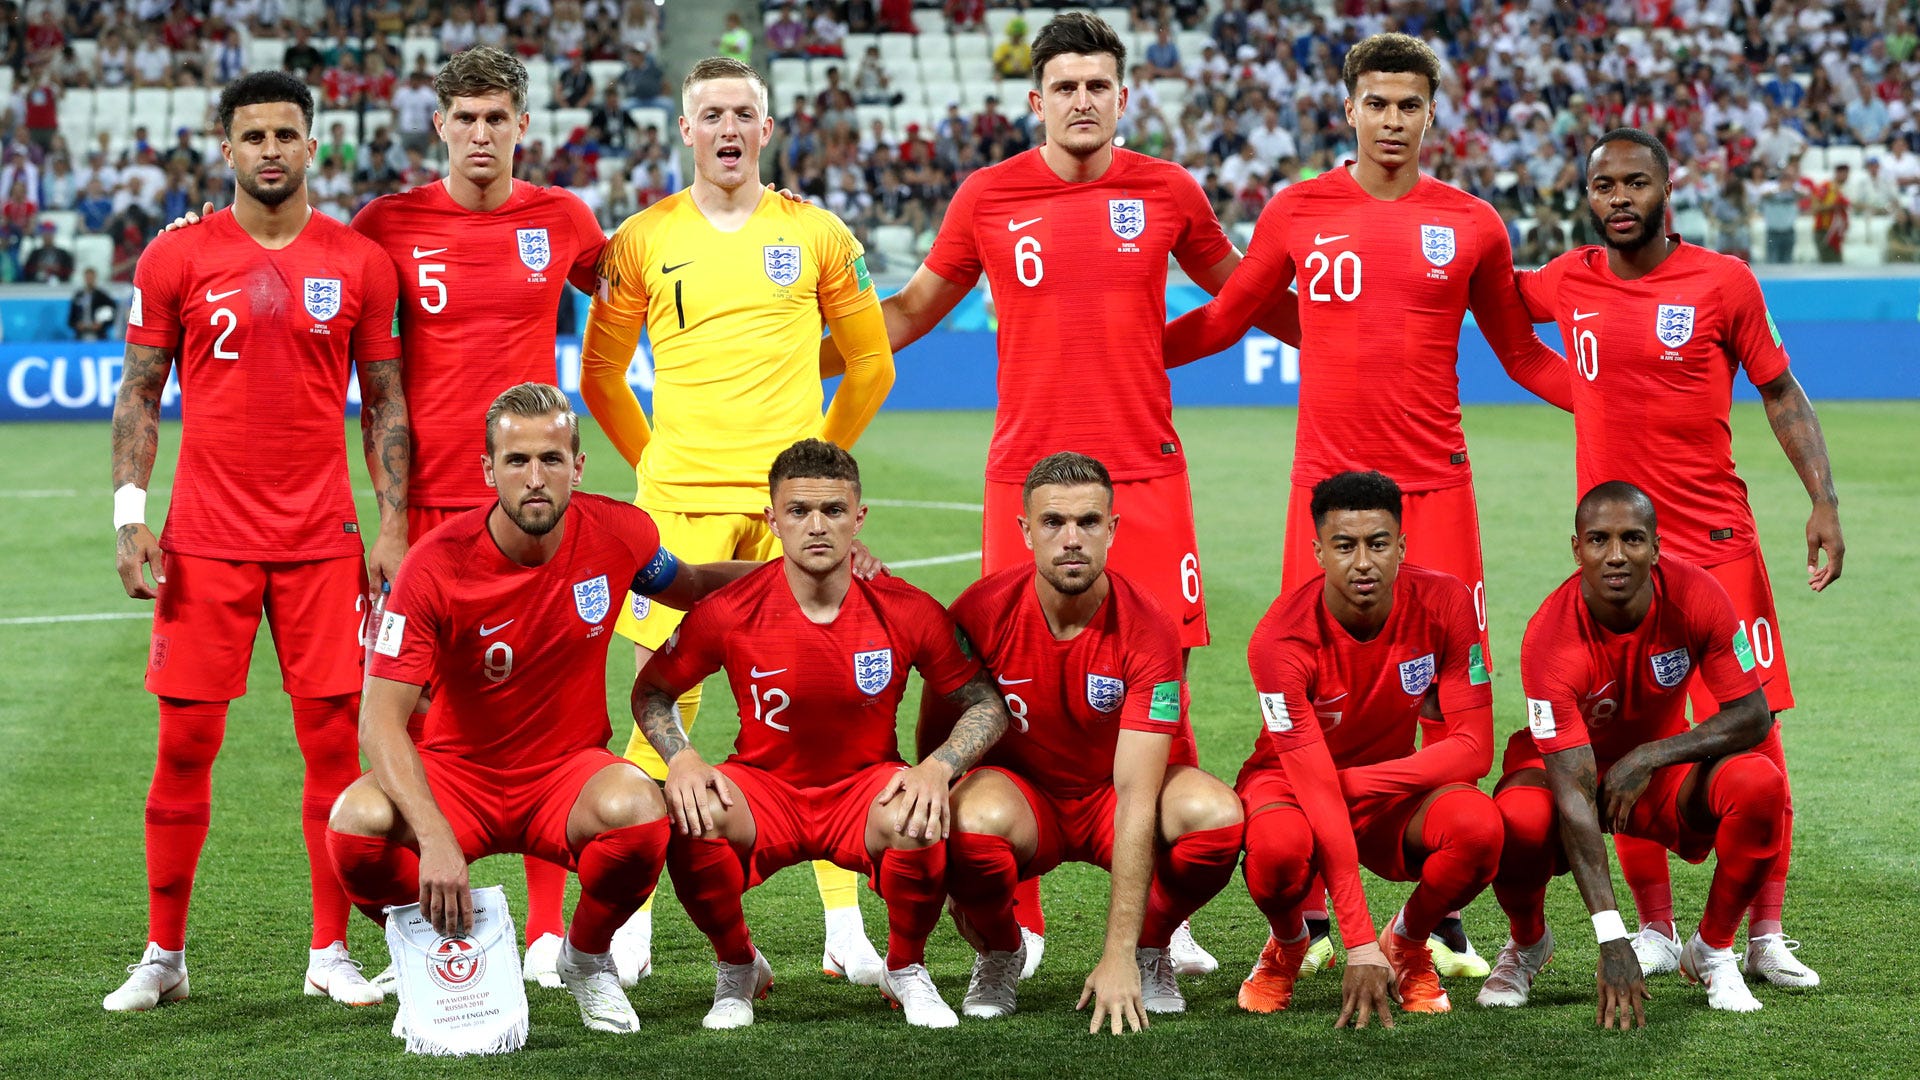 England 2018 WM-Kader Ergebnisse Spielplan Tabelle